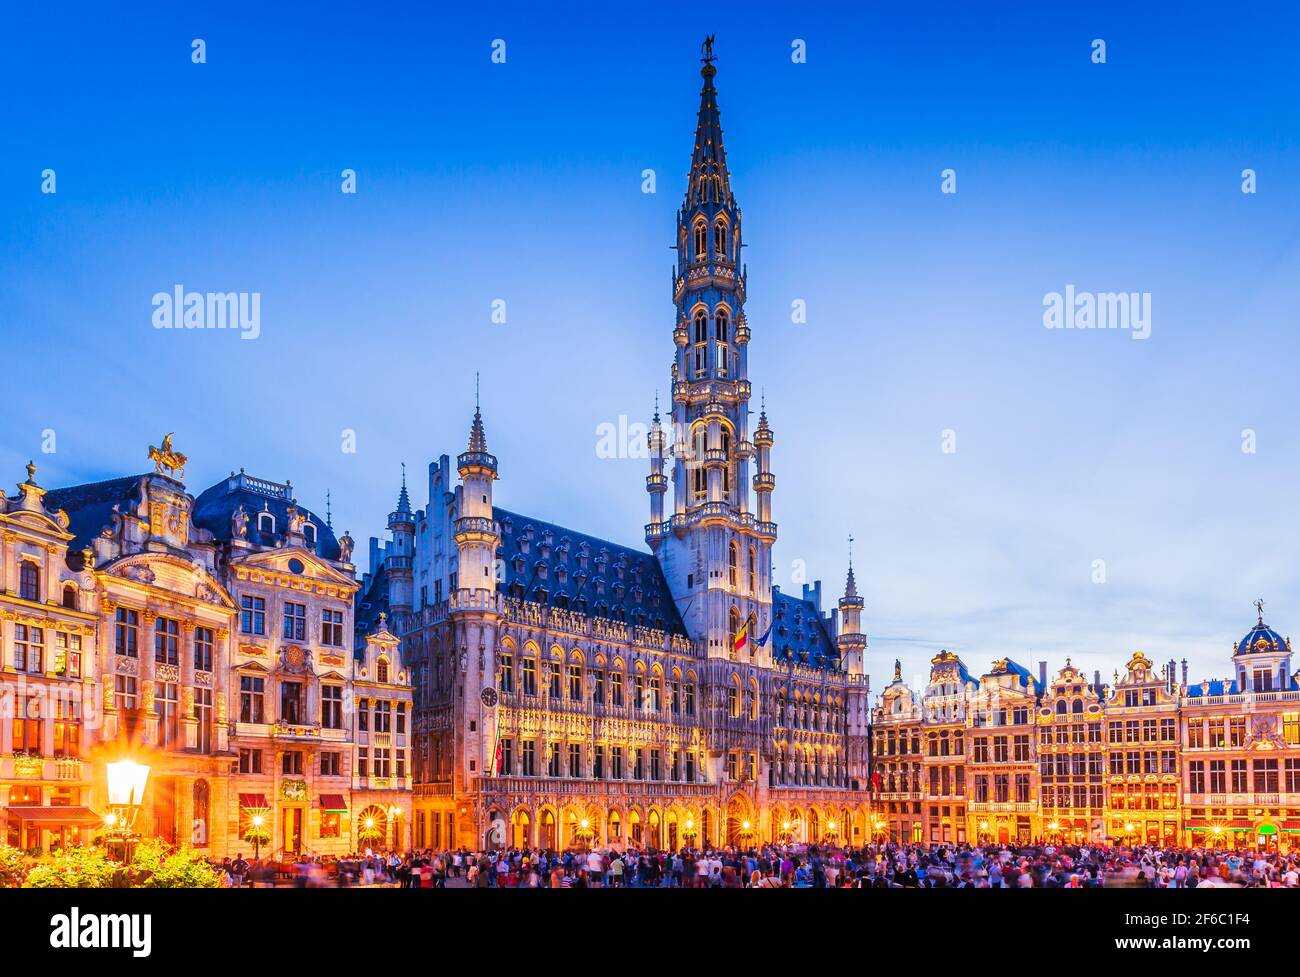 Brüssel, Belgien. Grand Place. Marktplatz von gildenhalle umgeben. Stockfoto